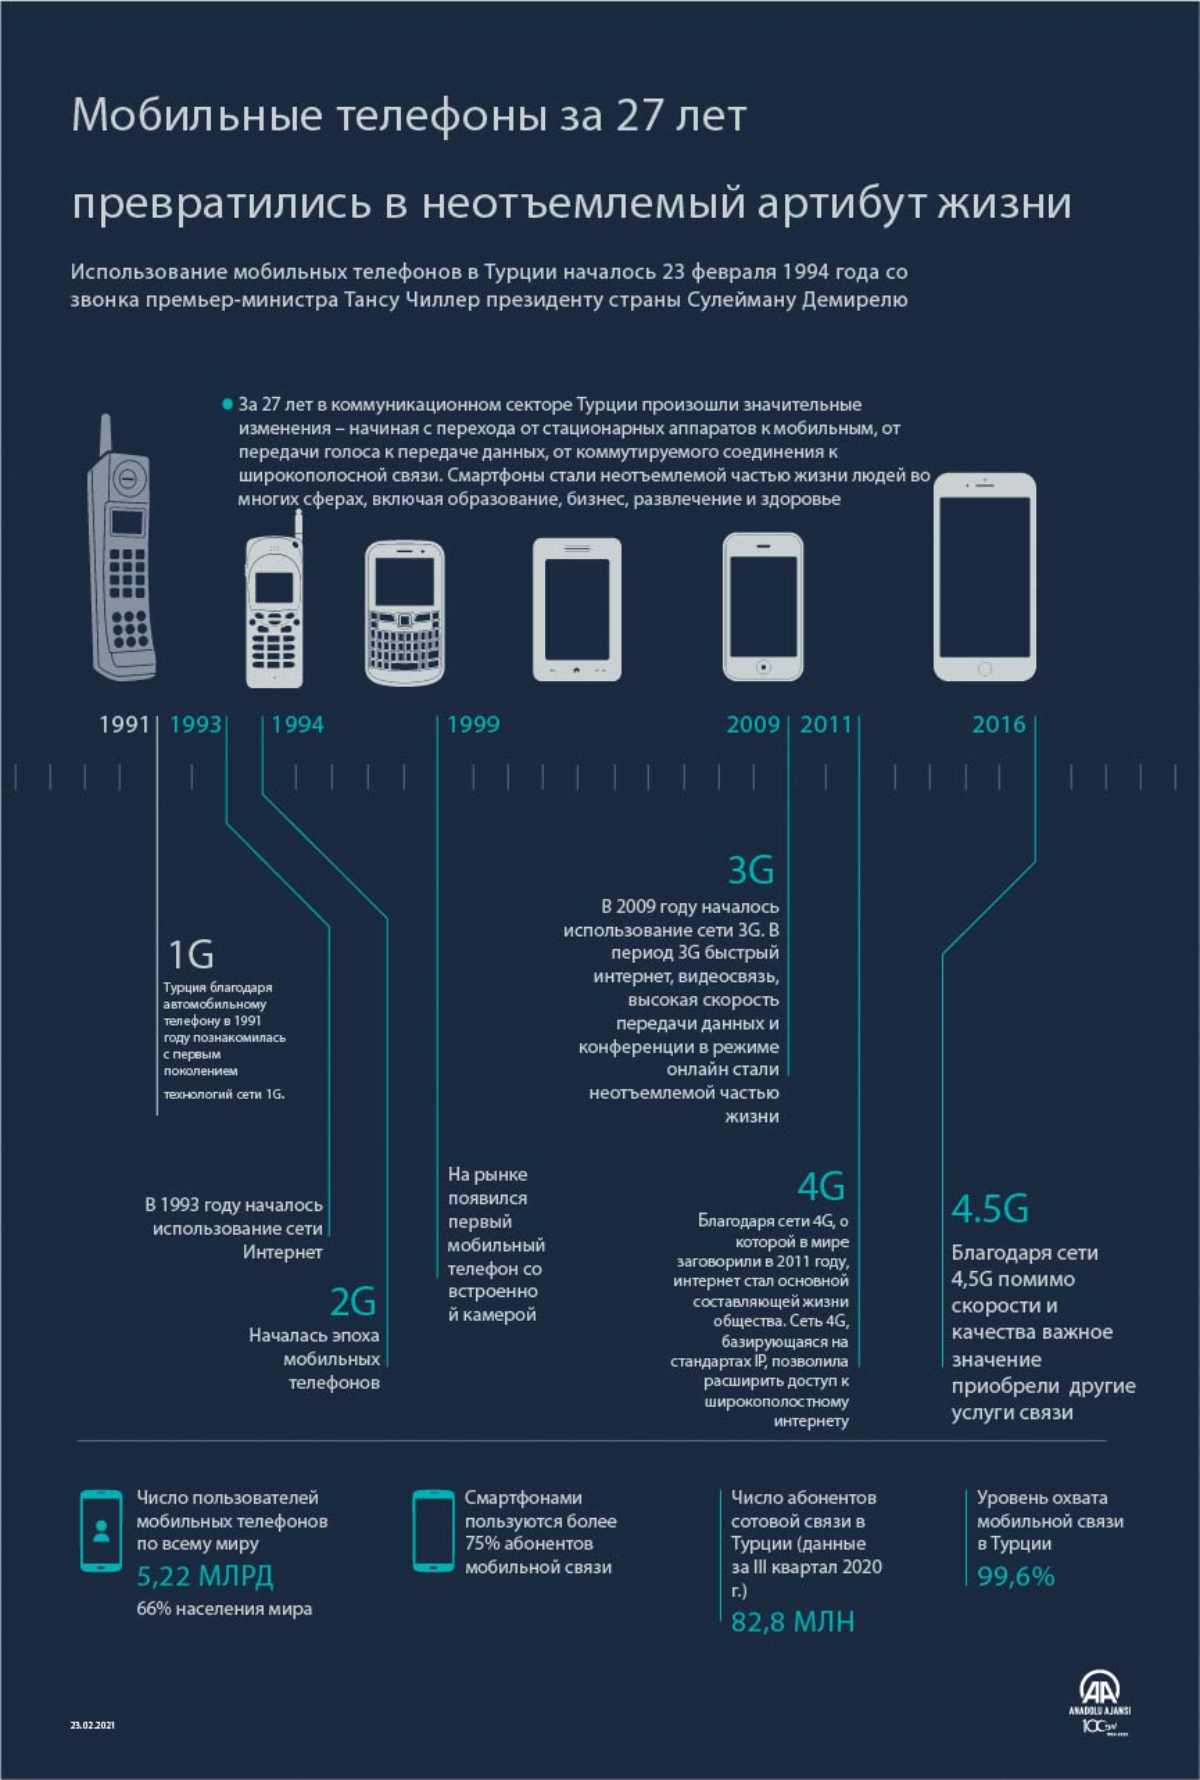 Мобильные телефоны за 27 лет превратились в неотъемлемый артибут жизни